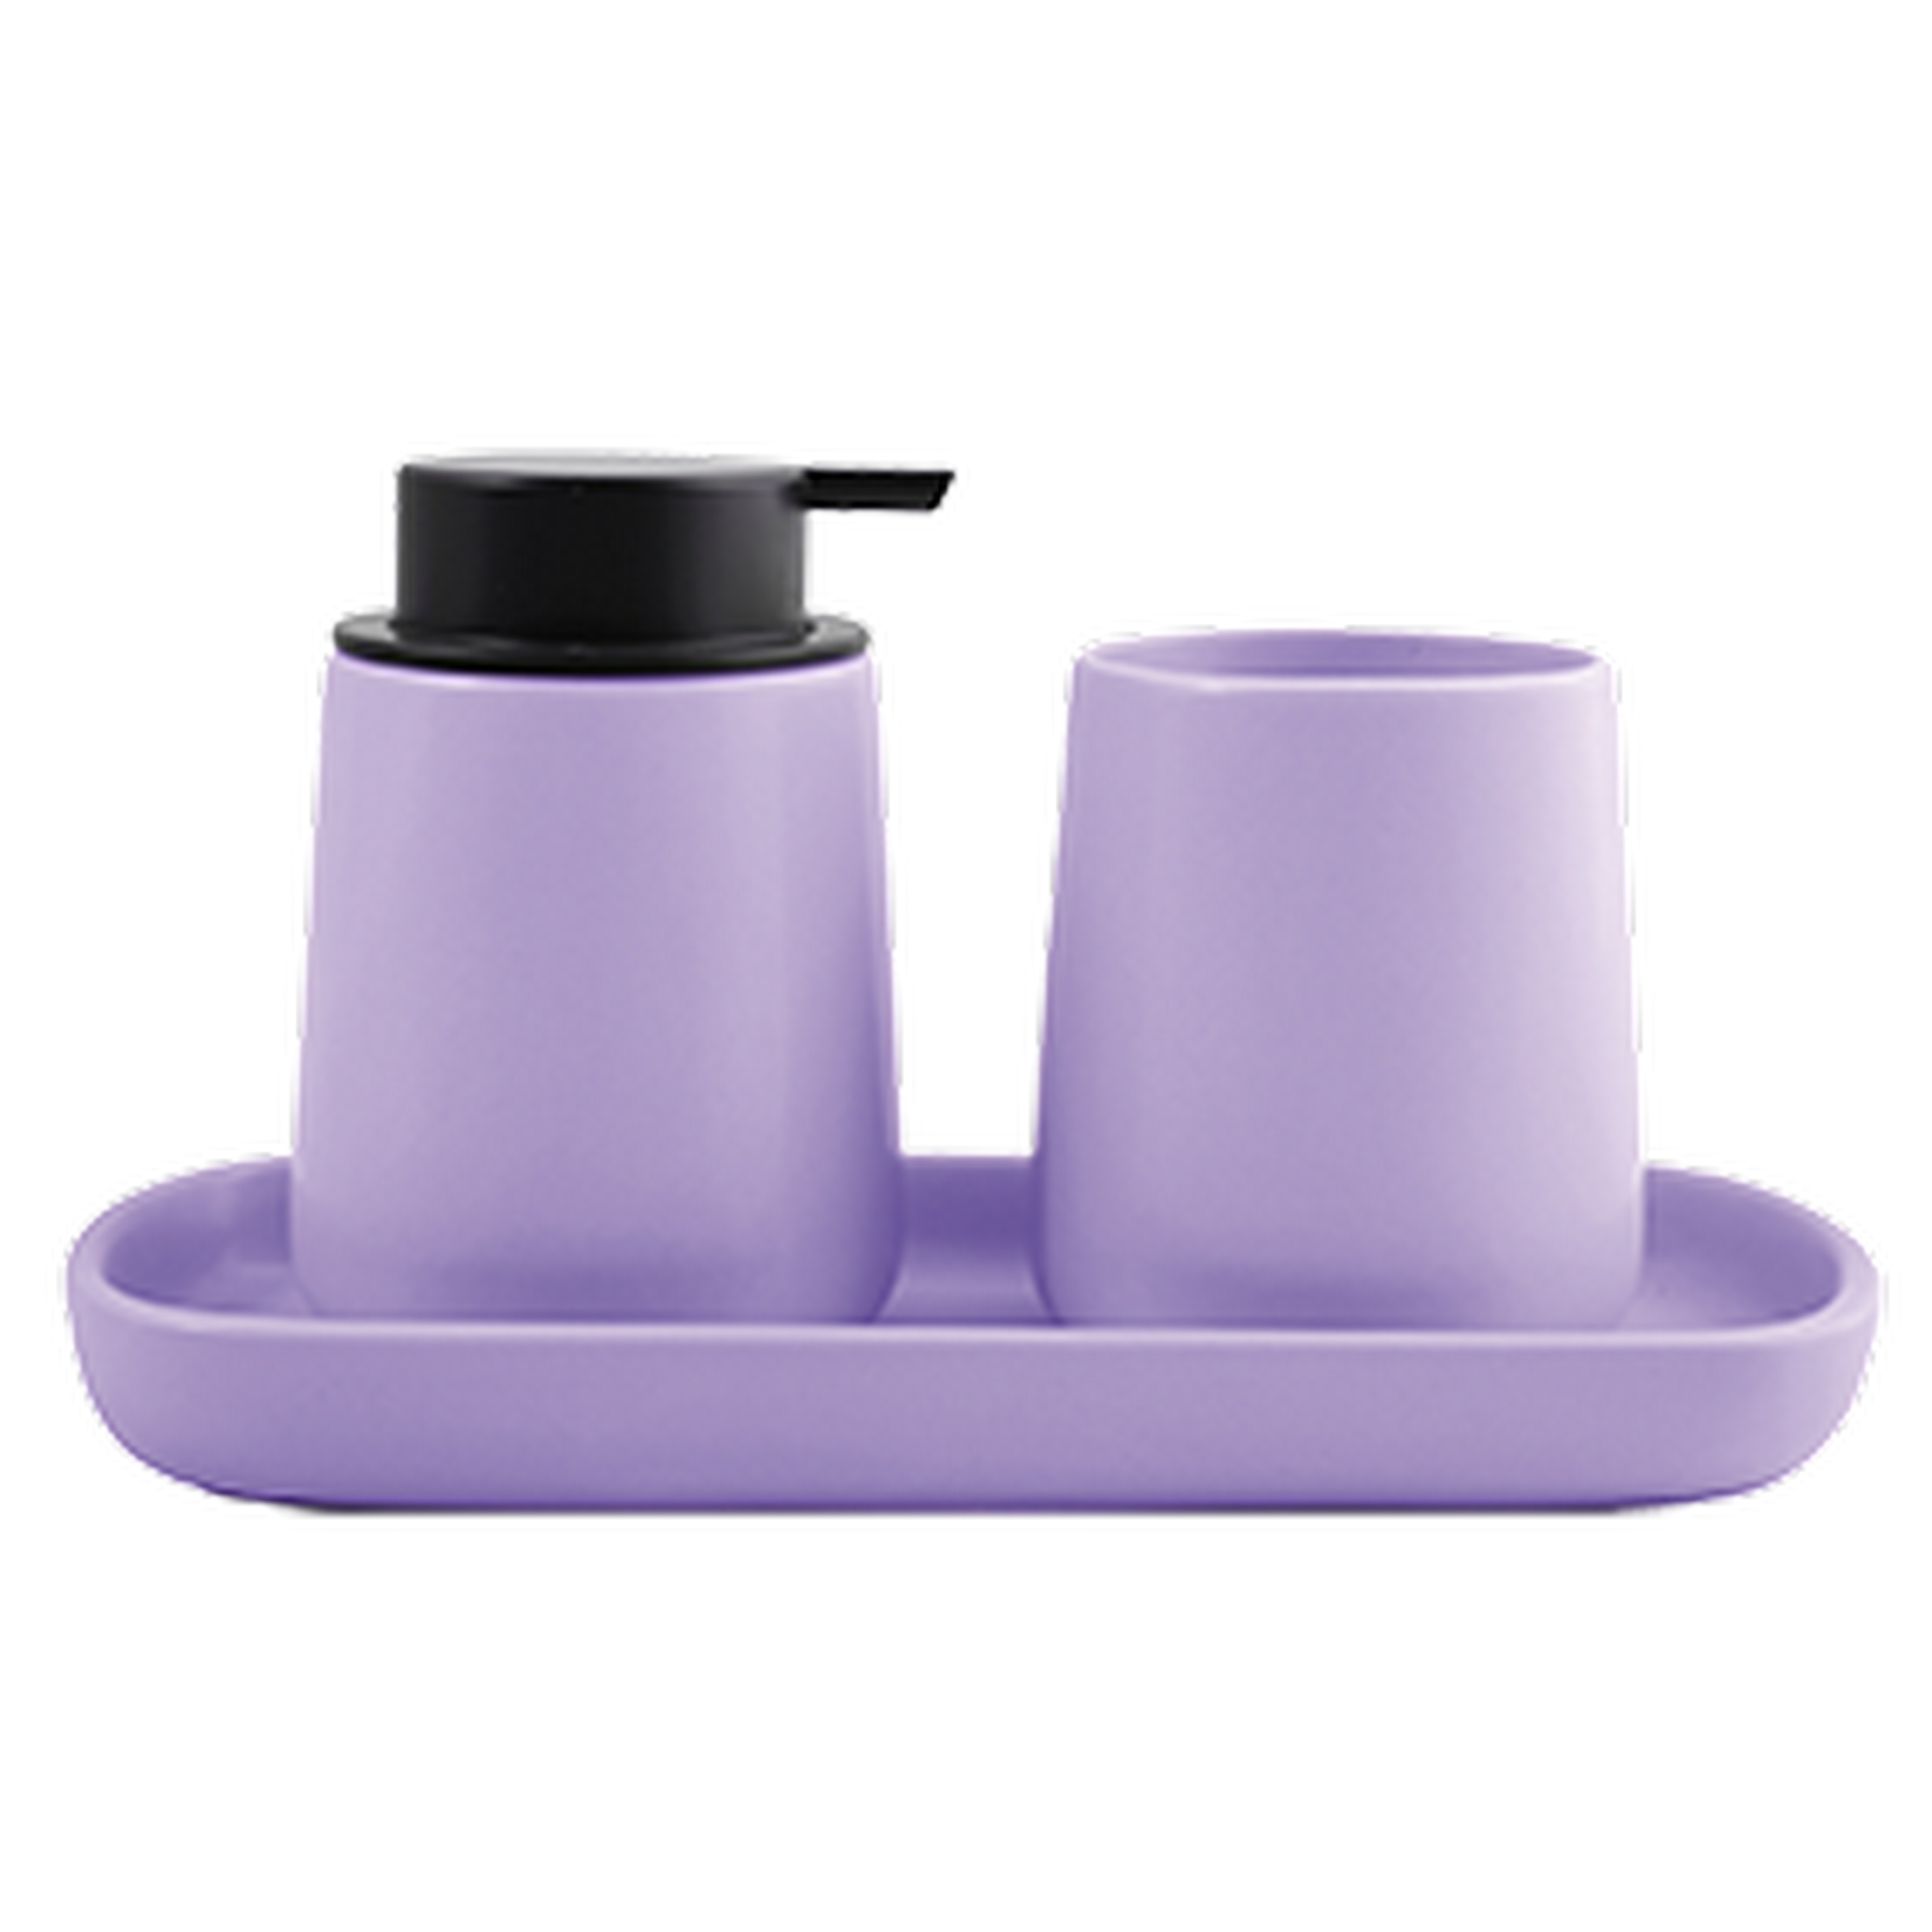 Ablageschale 'Maonie' Keramik lavendel 25,7 x 11,5 x 2,8 cm + product picture